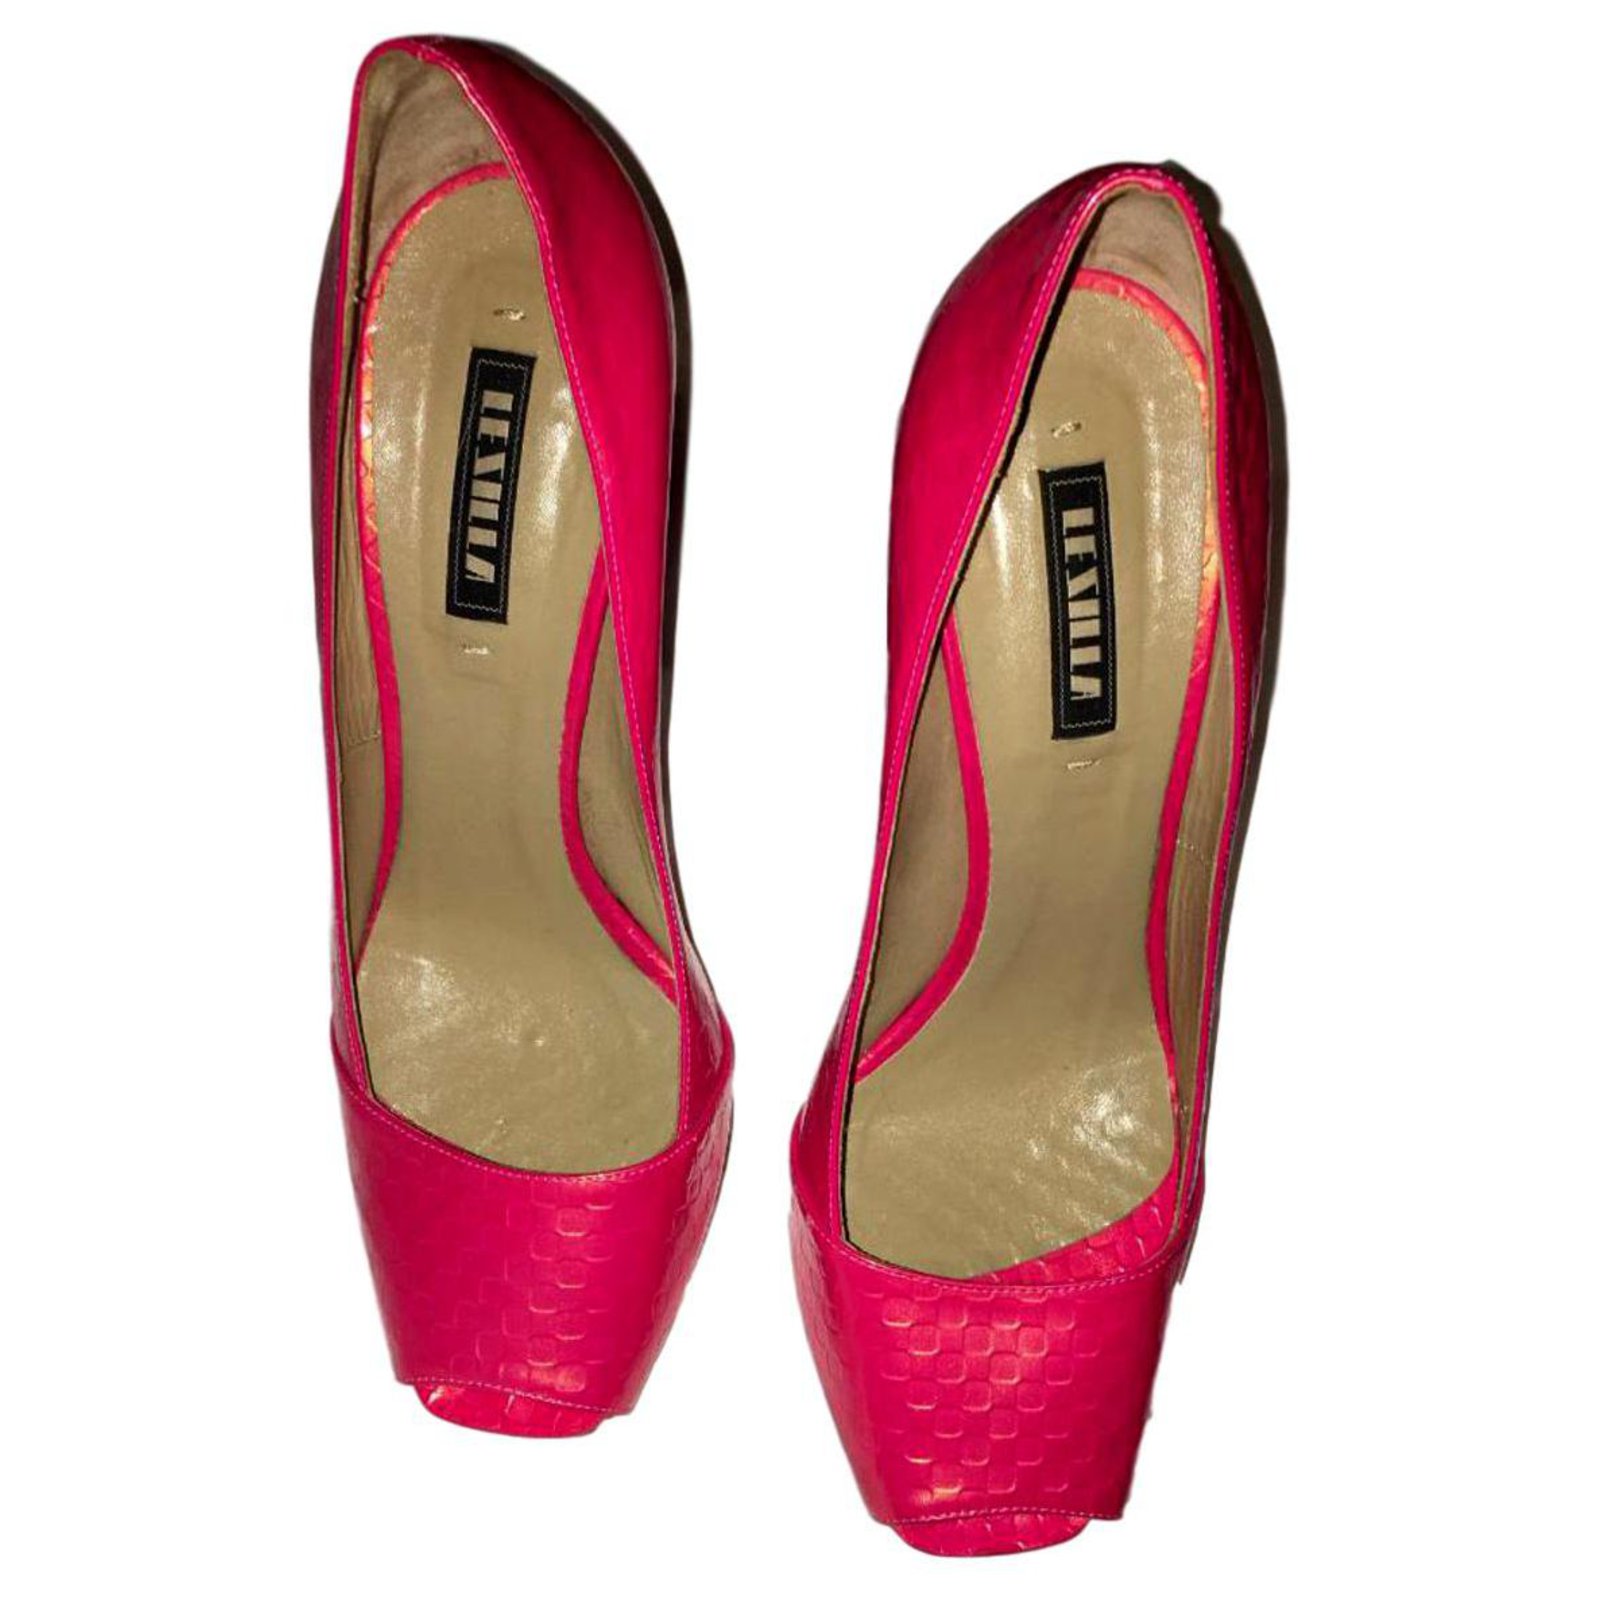 Zapatos de tacón con borde festoneado Le Silla de Ante de color Rosa Mujer Zapatos de Tacones de Zapatos de salón 